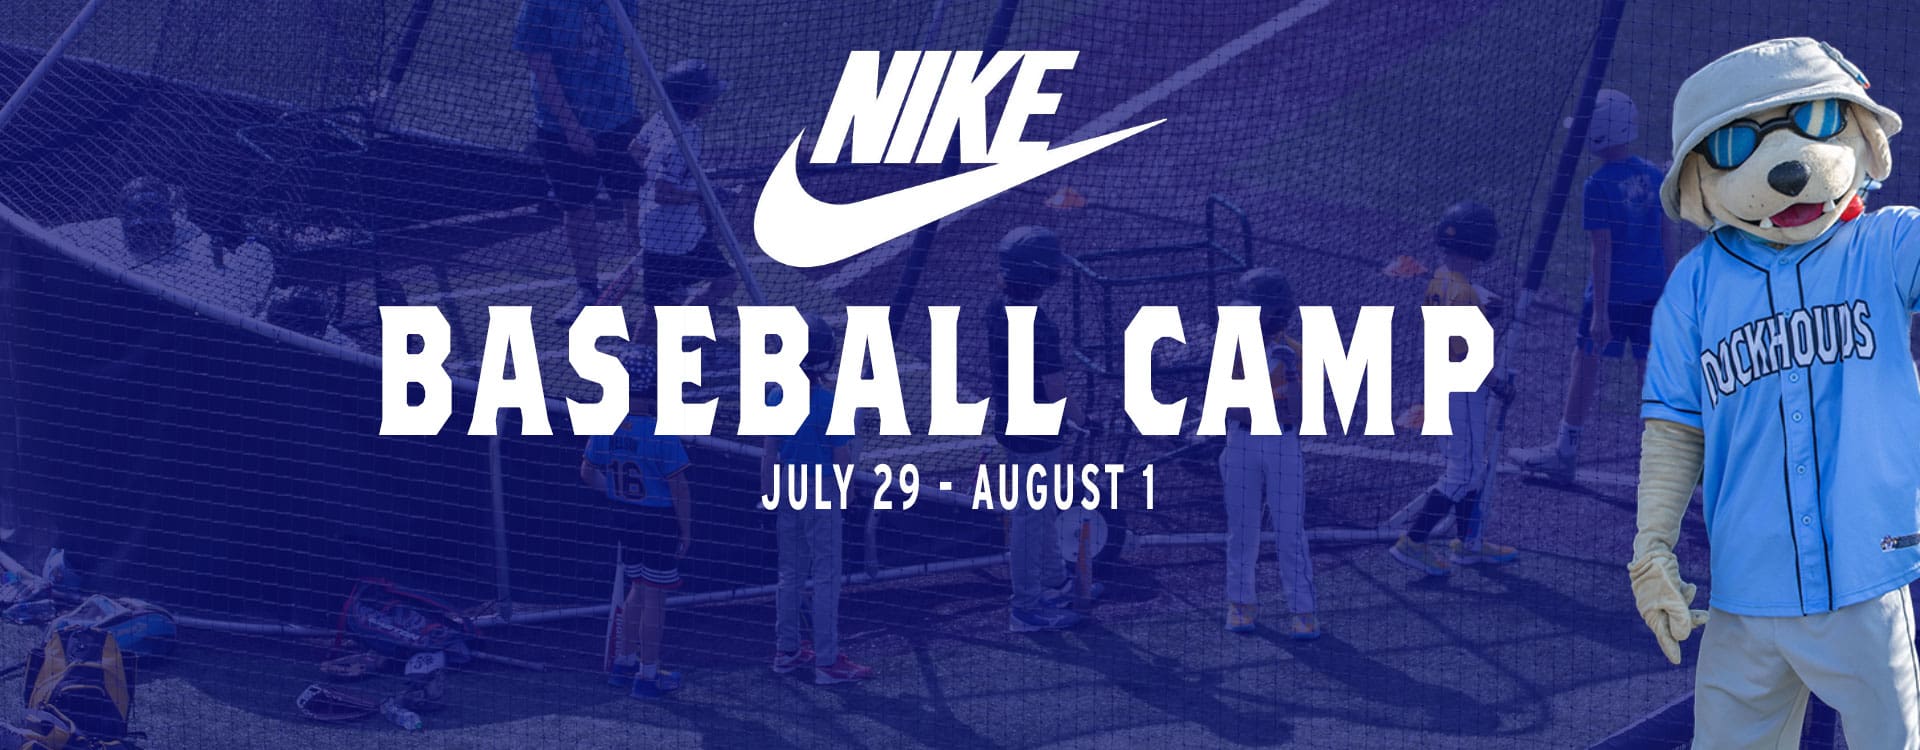 Nike Baseball Camp July 29-August 1